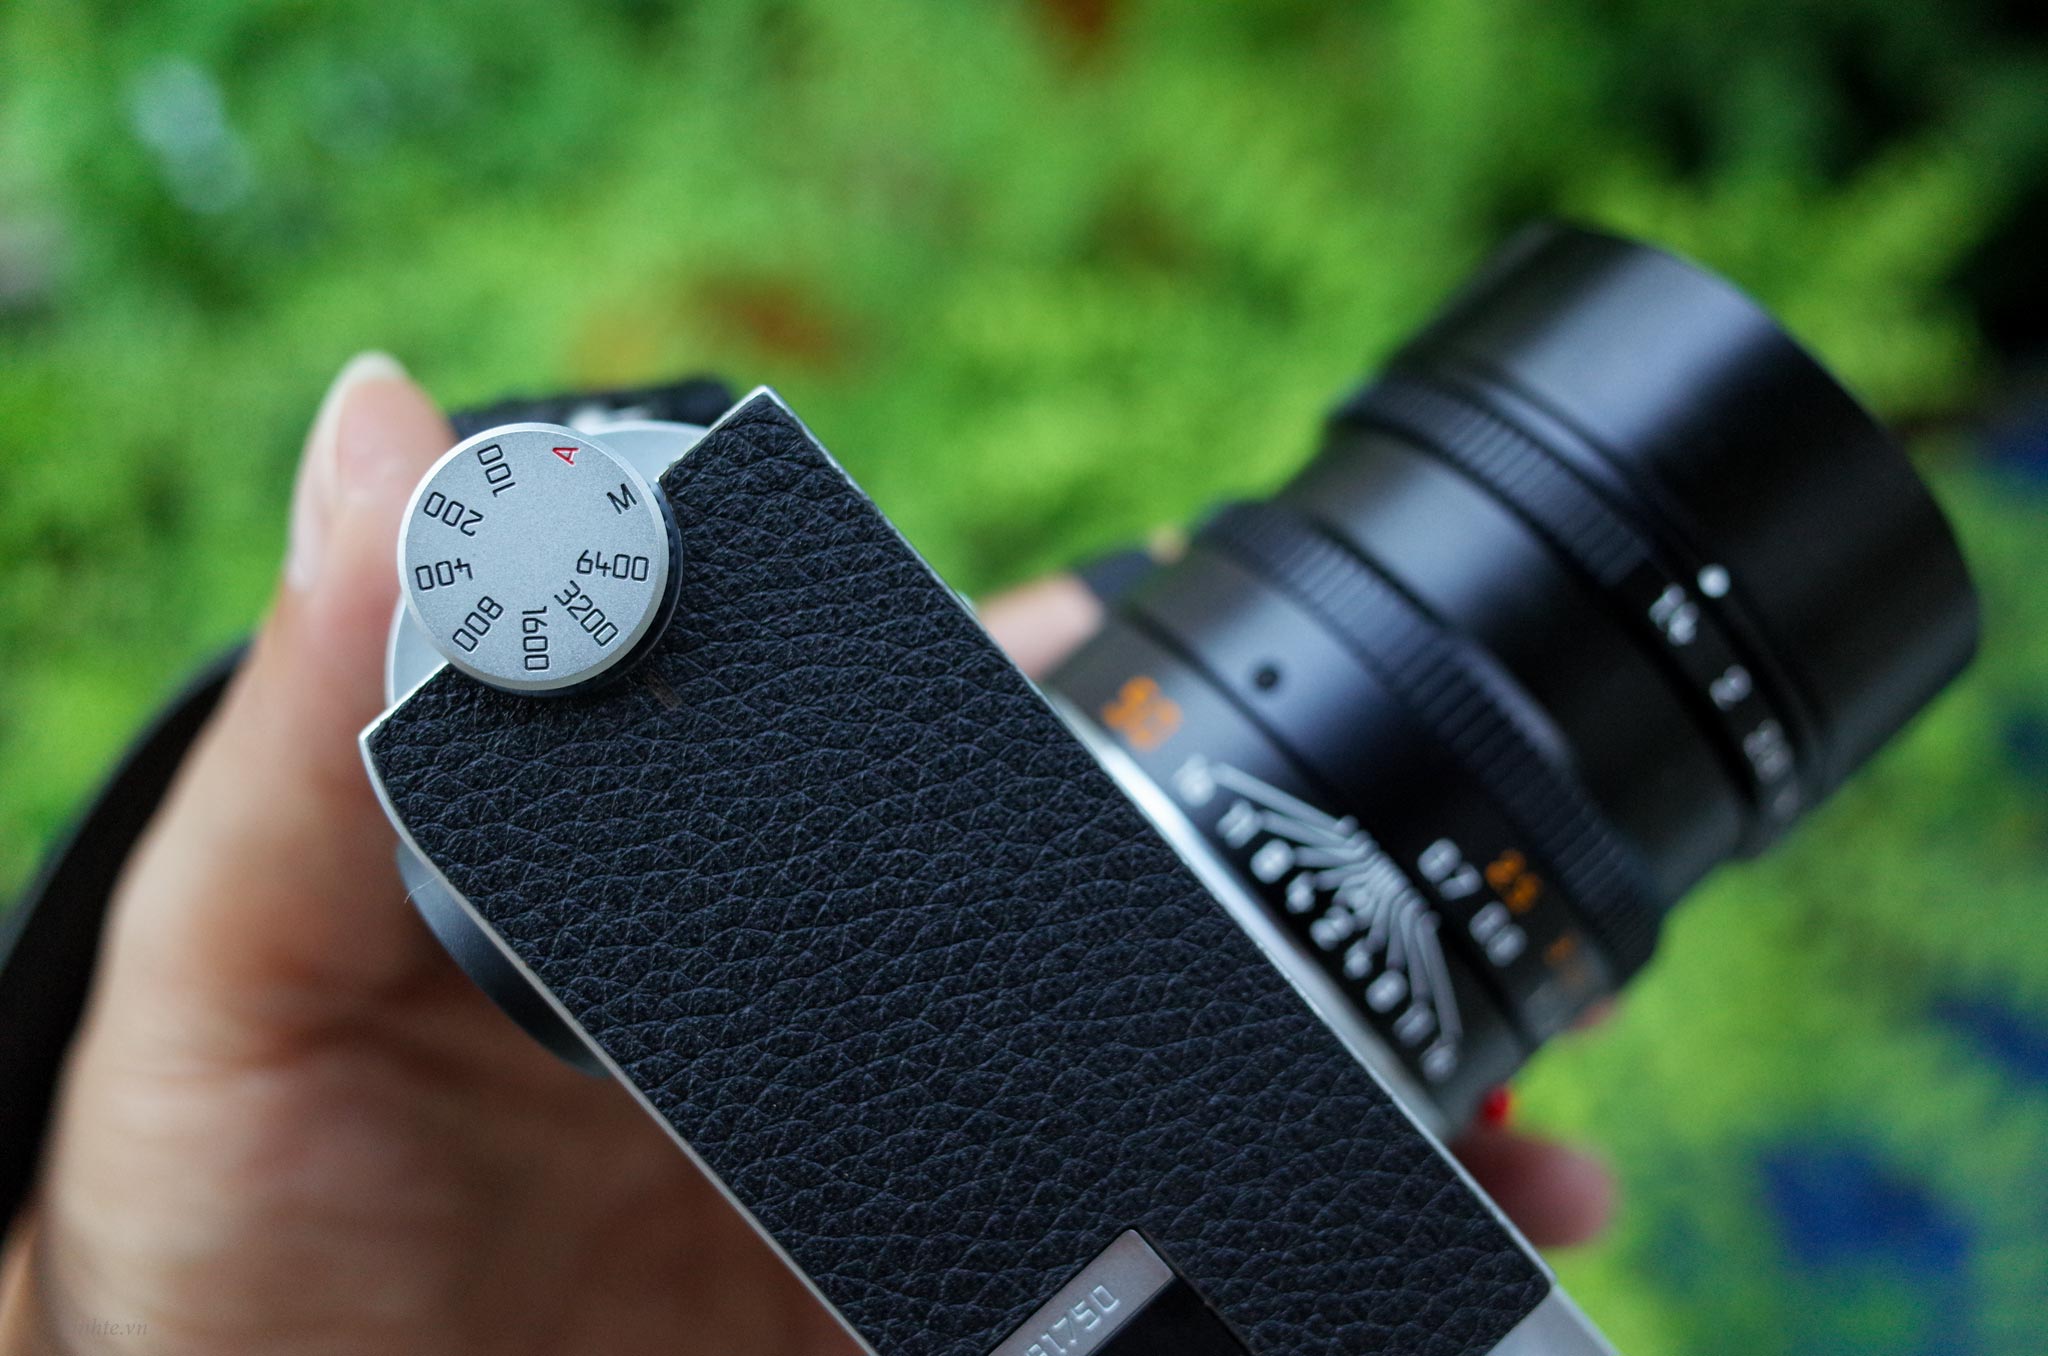 review máy ảnh Leica M10